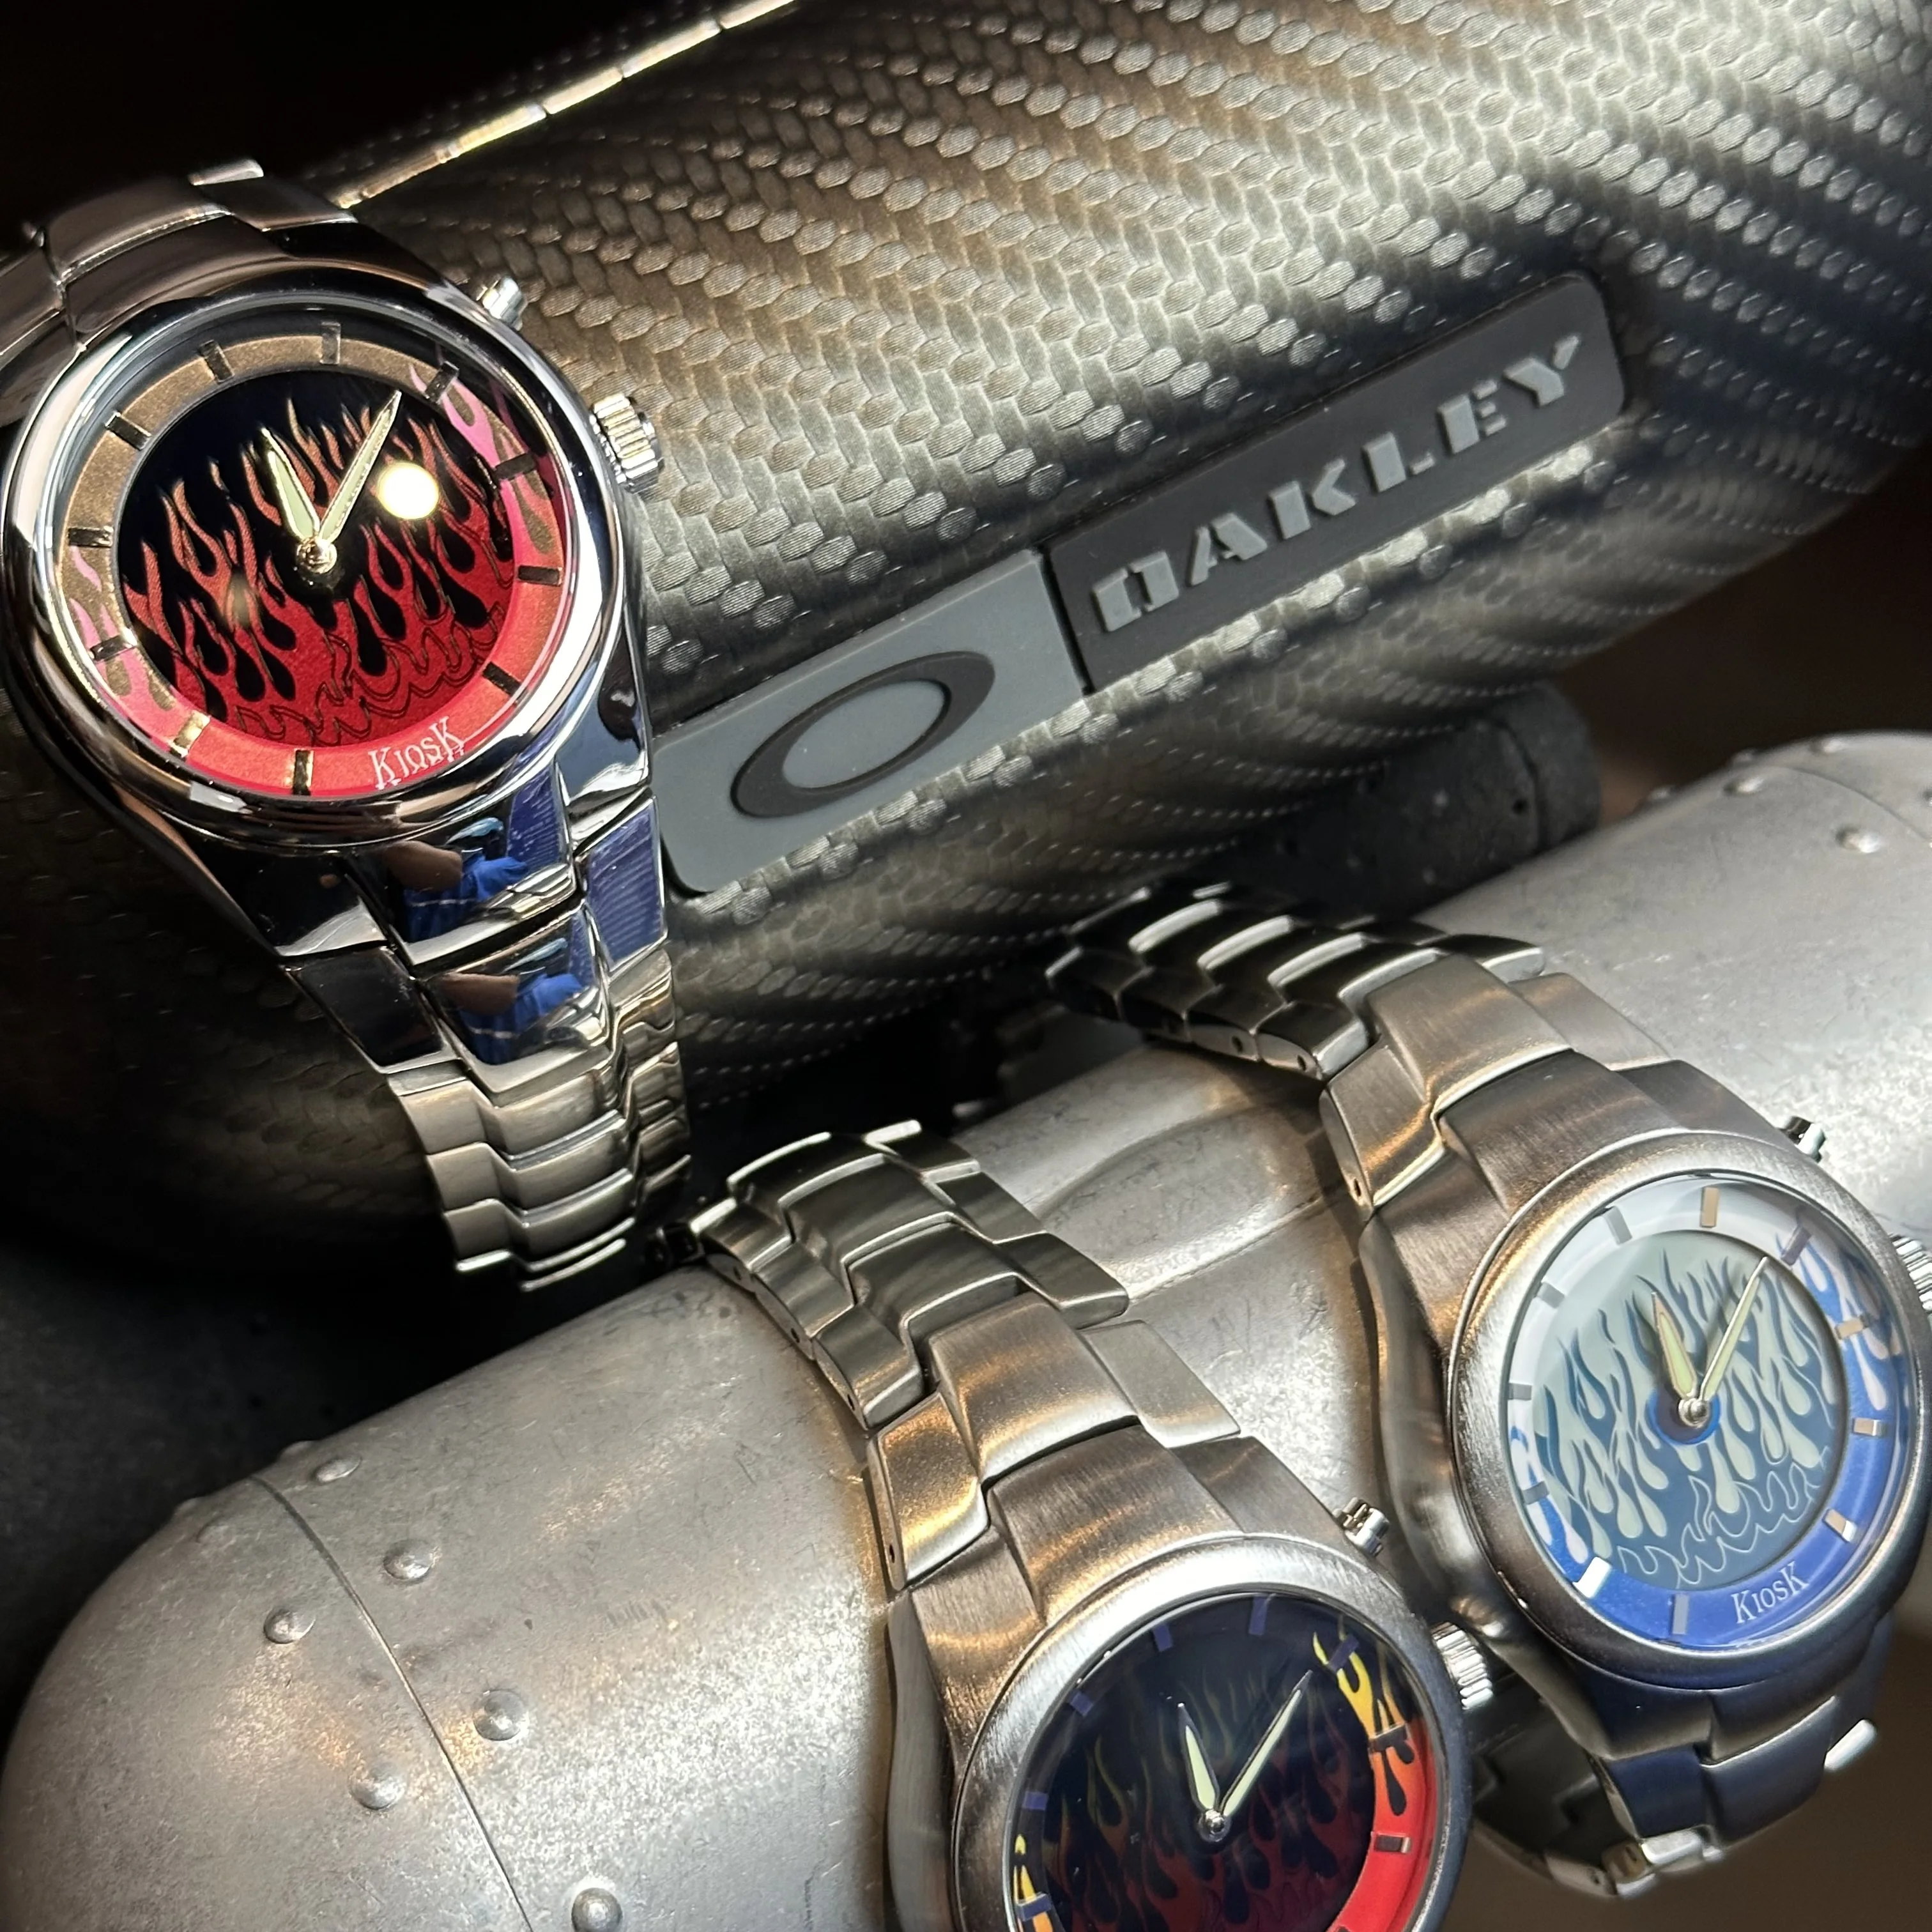 

Оригинальные часы-киоски в стиле Fossil в стиле ретро, европейские и американские часы, высококачественные часы в стиле Instagram с тем же нишевым дизайном